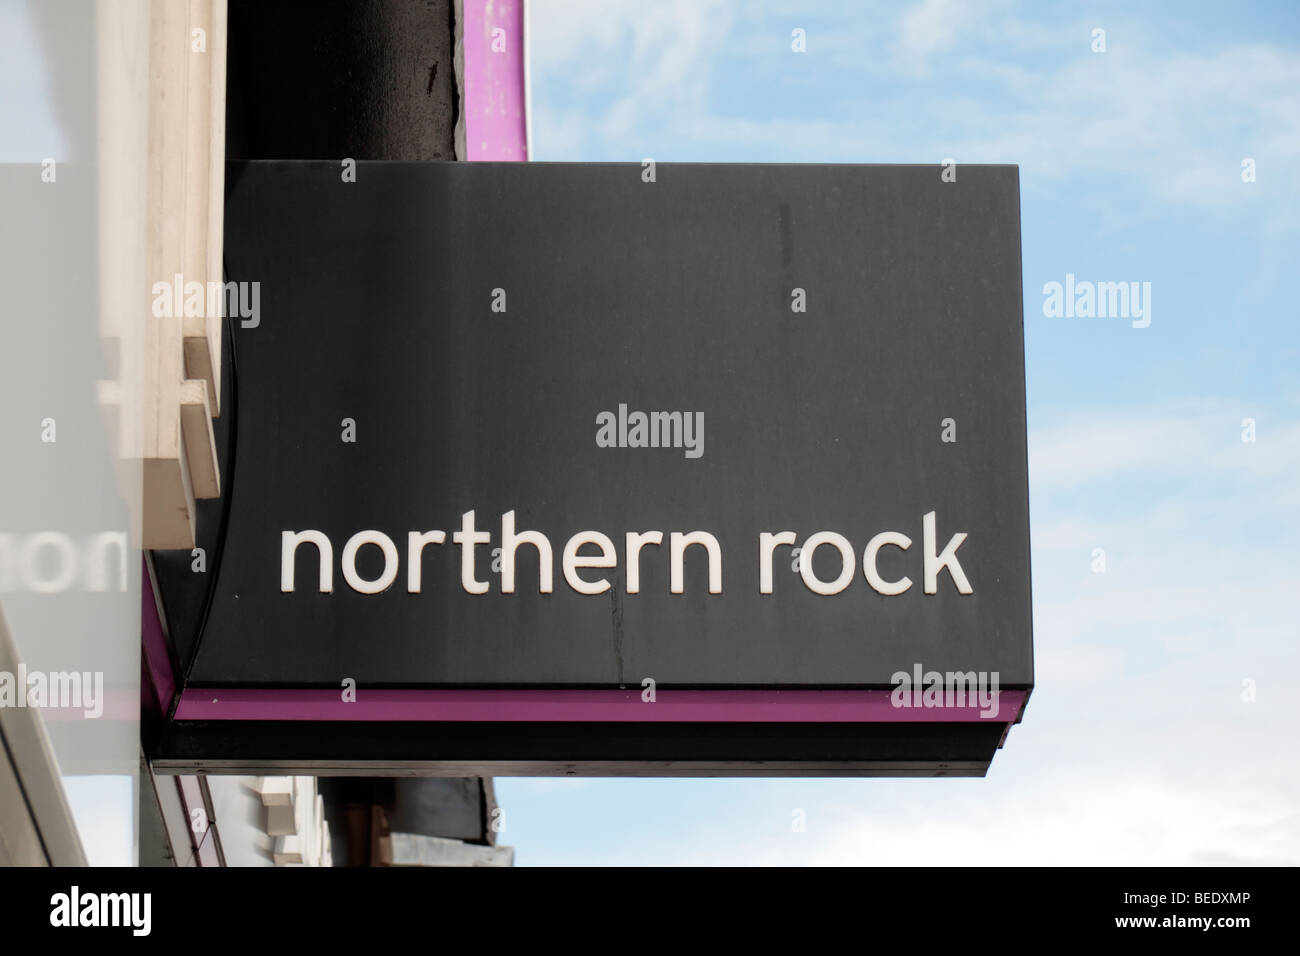 Le logo de la marque de la Northern Rock la construction de la société sur la succursale sur Station Road, Harrow, Royaume-Uni. Août 2009 Banque D'Images